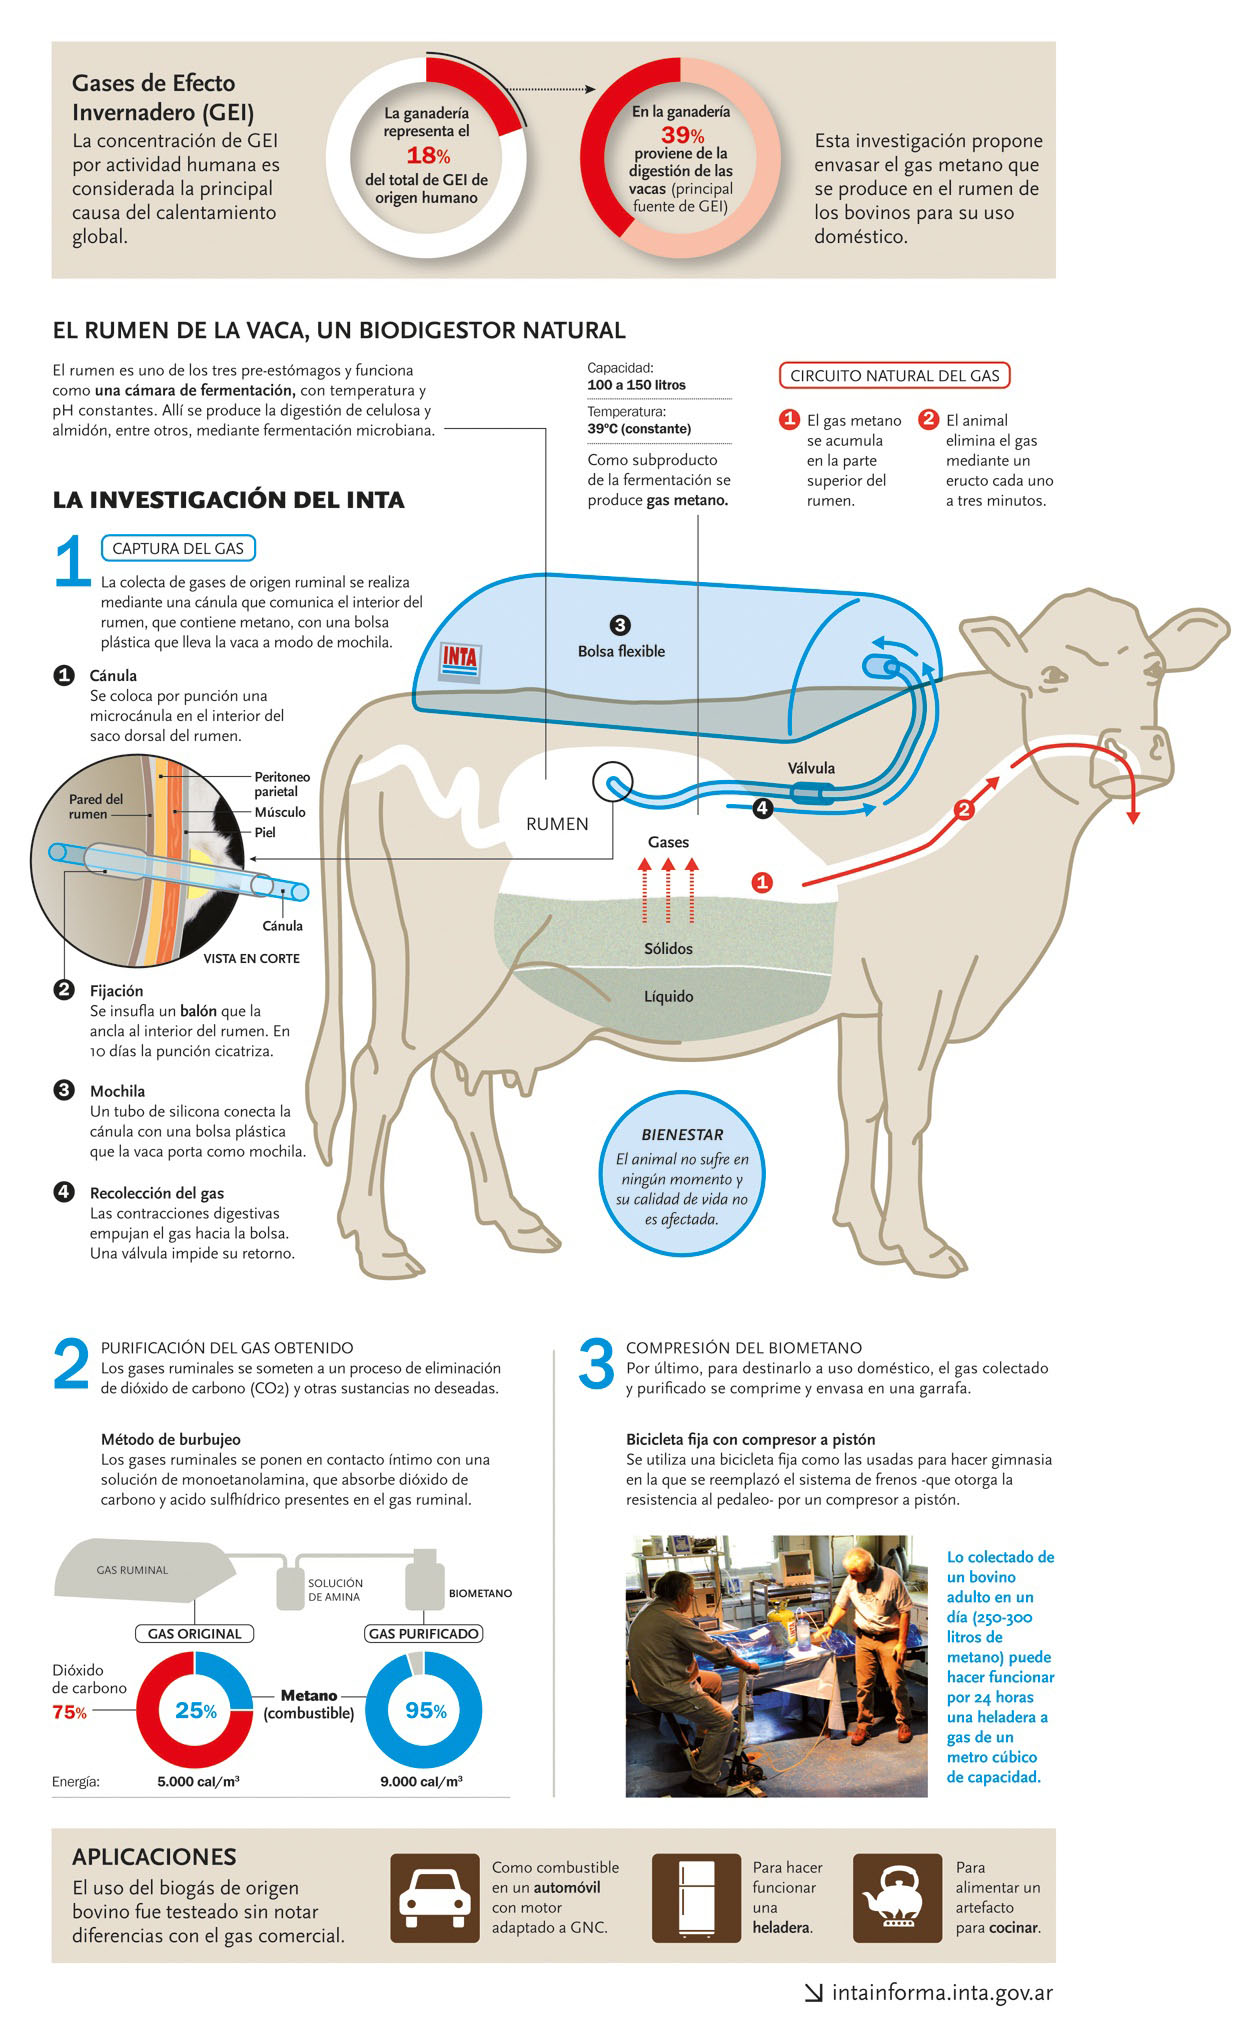 Aprovechamiento del biometano emitido por el ganado bovino